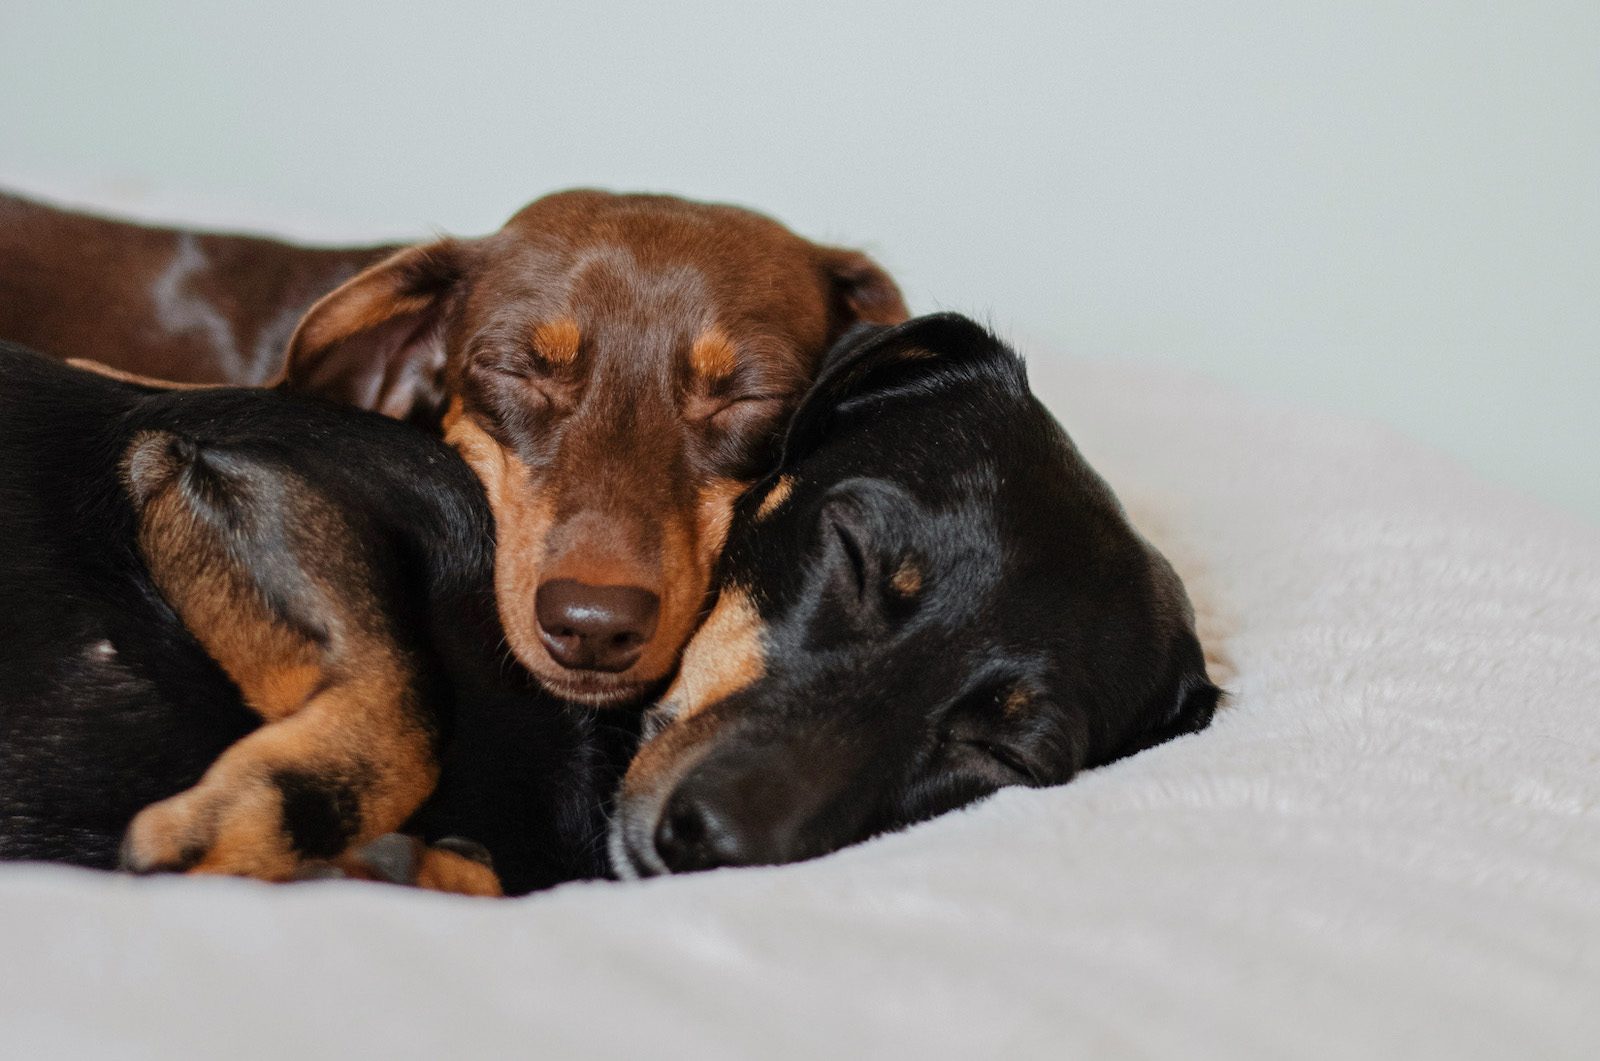 Zwei kleine Hunde mit braunen und mit schwarzem Fell kuscheln gemeinsam schläfrig und ruhig auf einer weißen Kuscheldecke